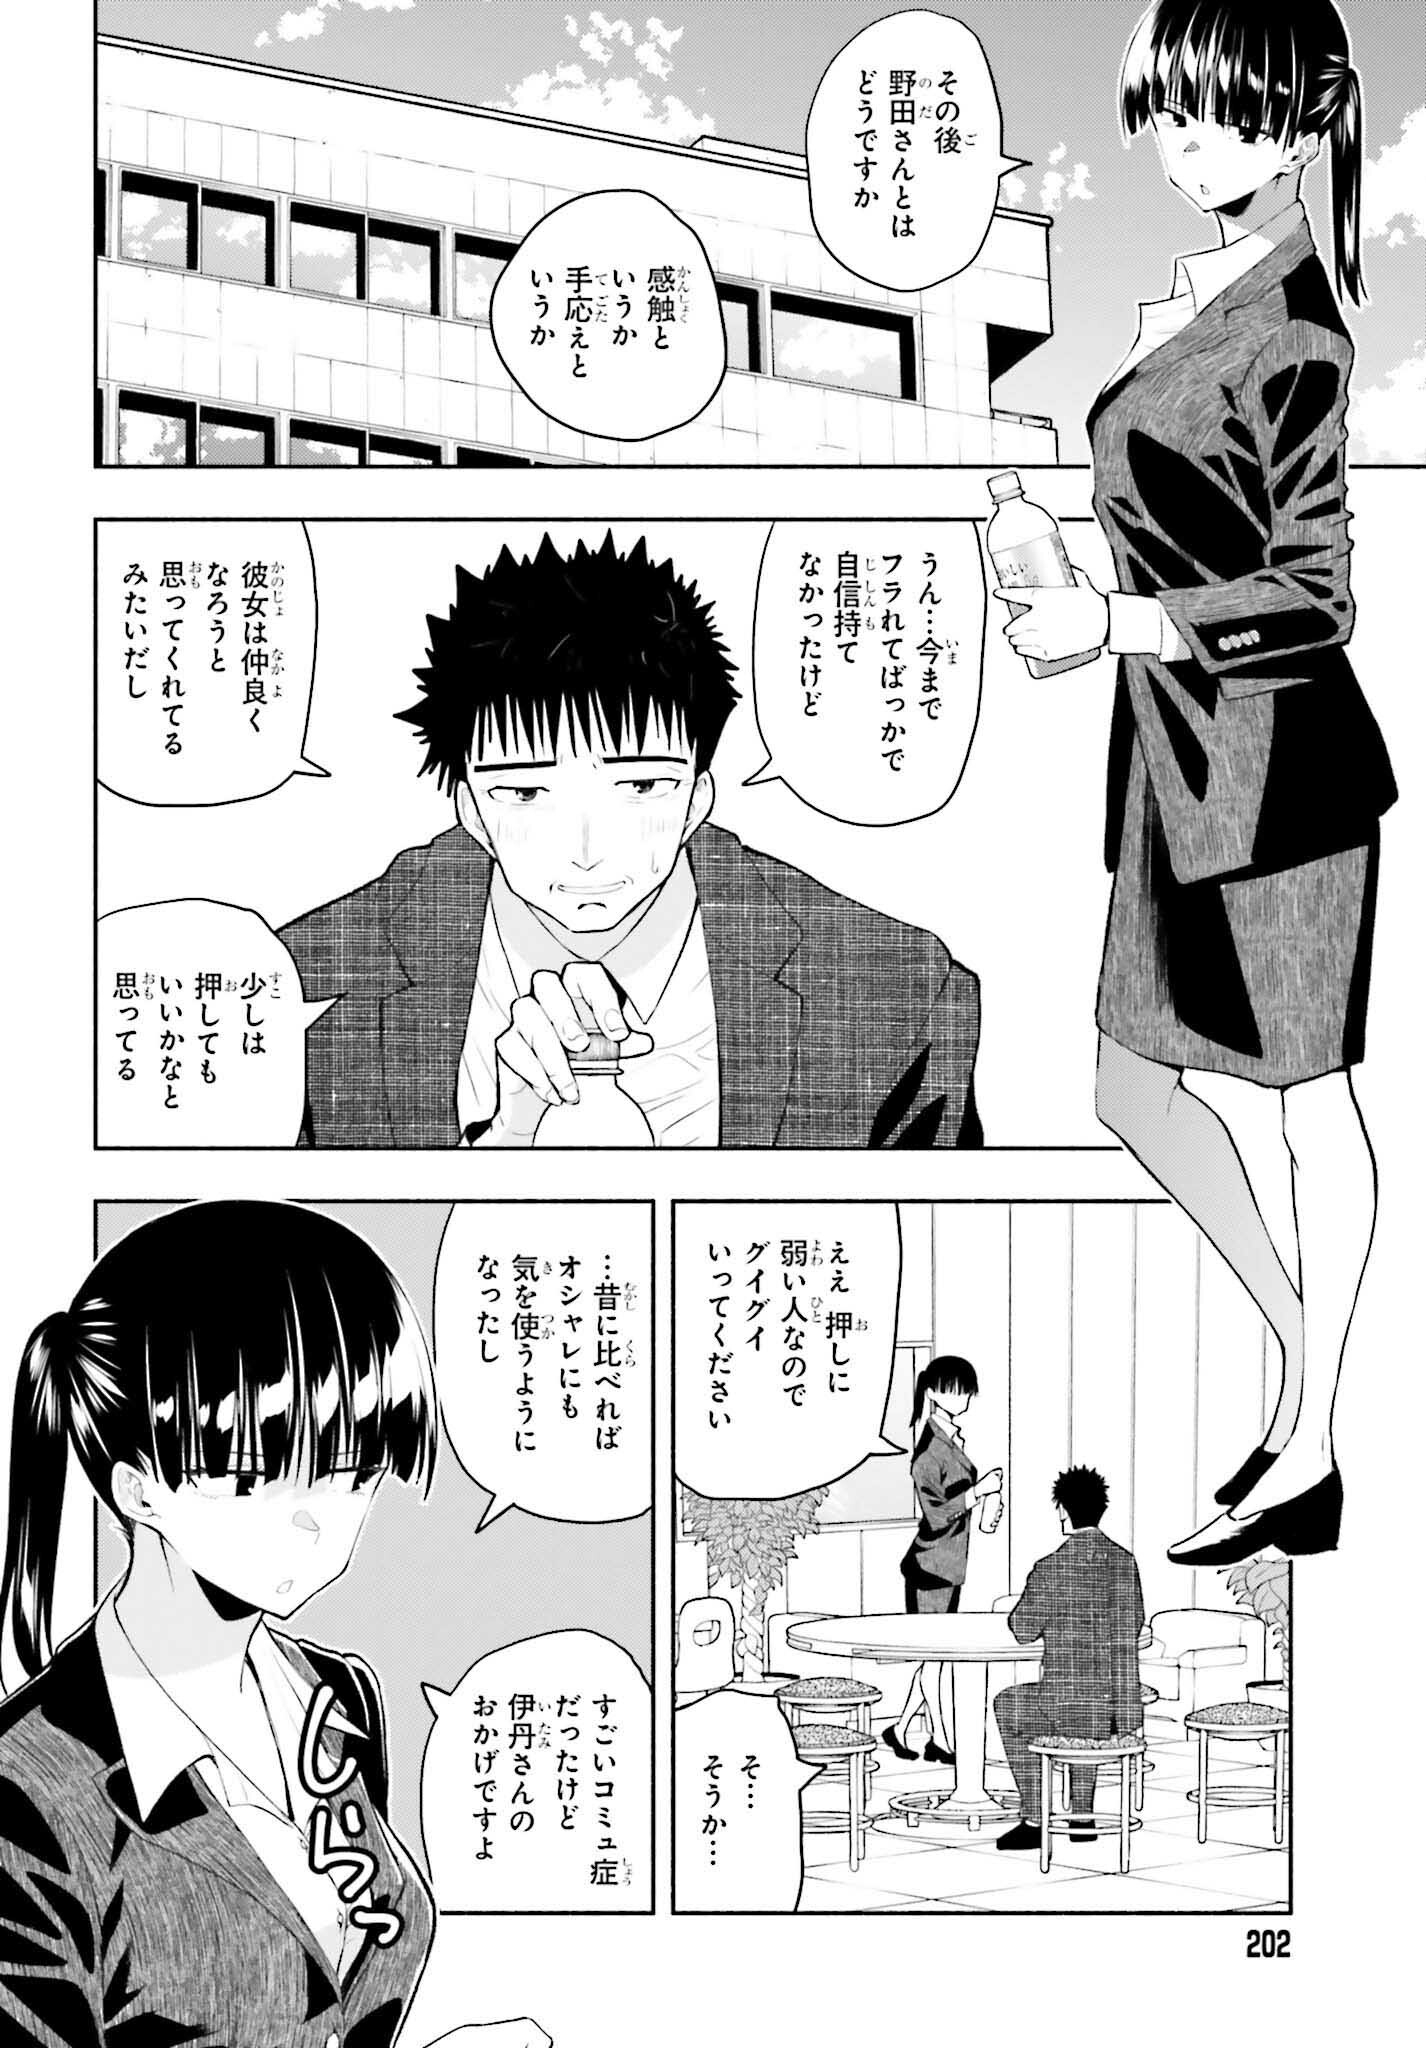 Omiai ni Sugoi Komyushou ga Kita - Chapter 13 - Page 2